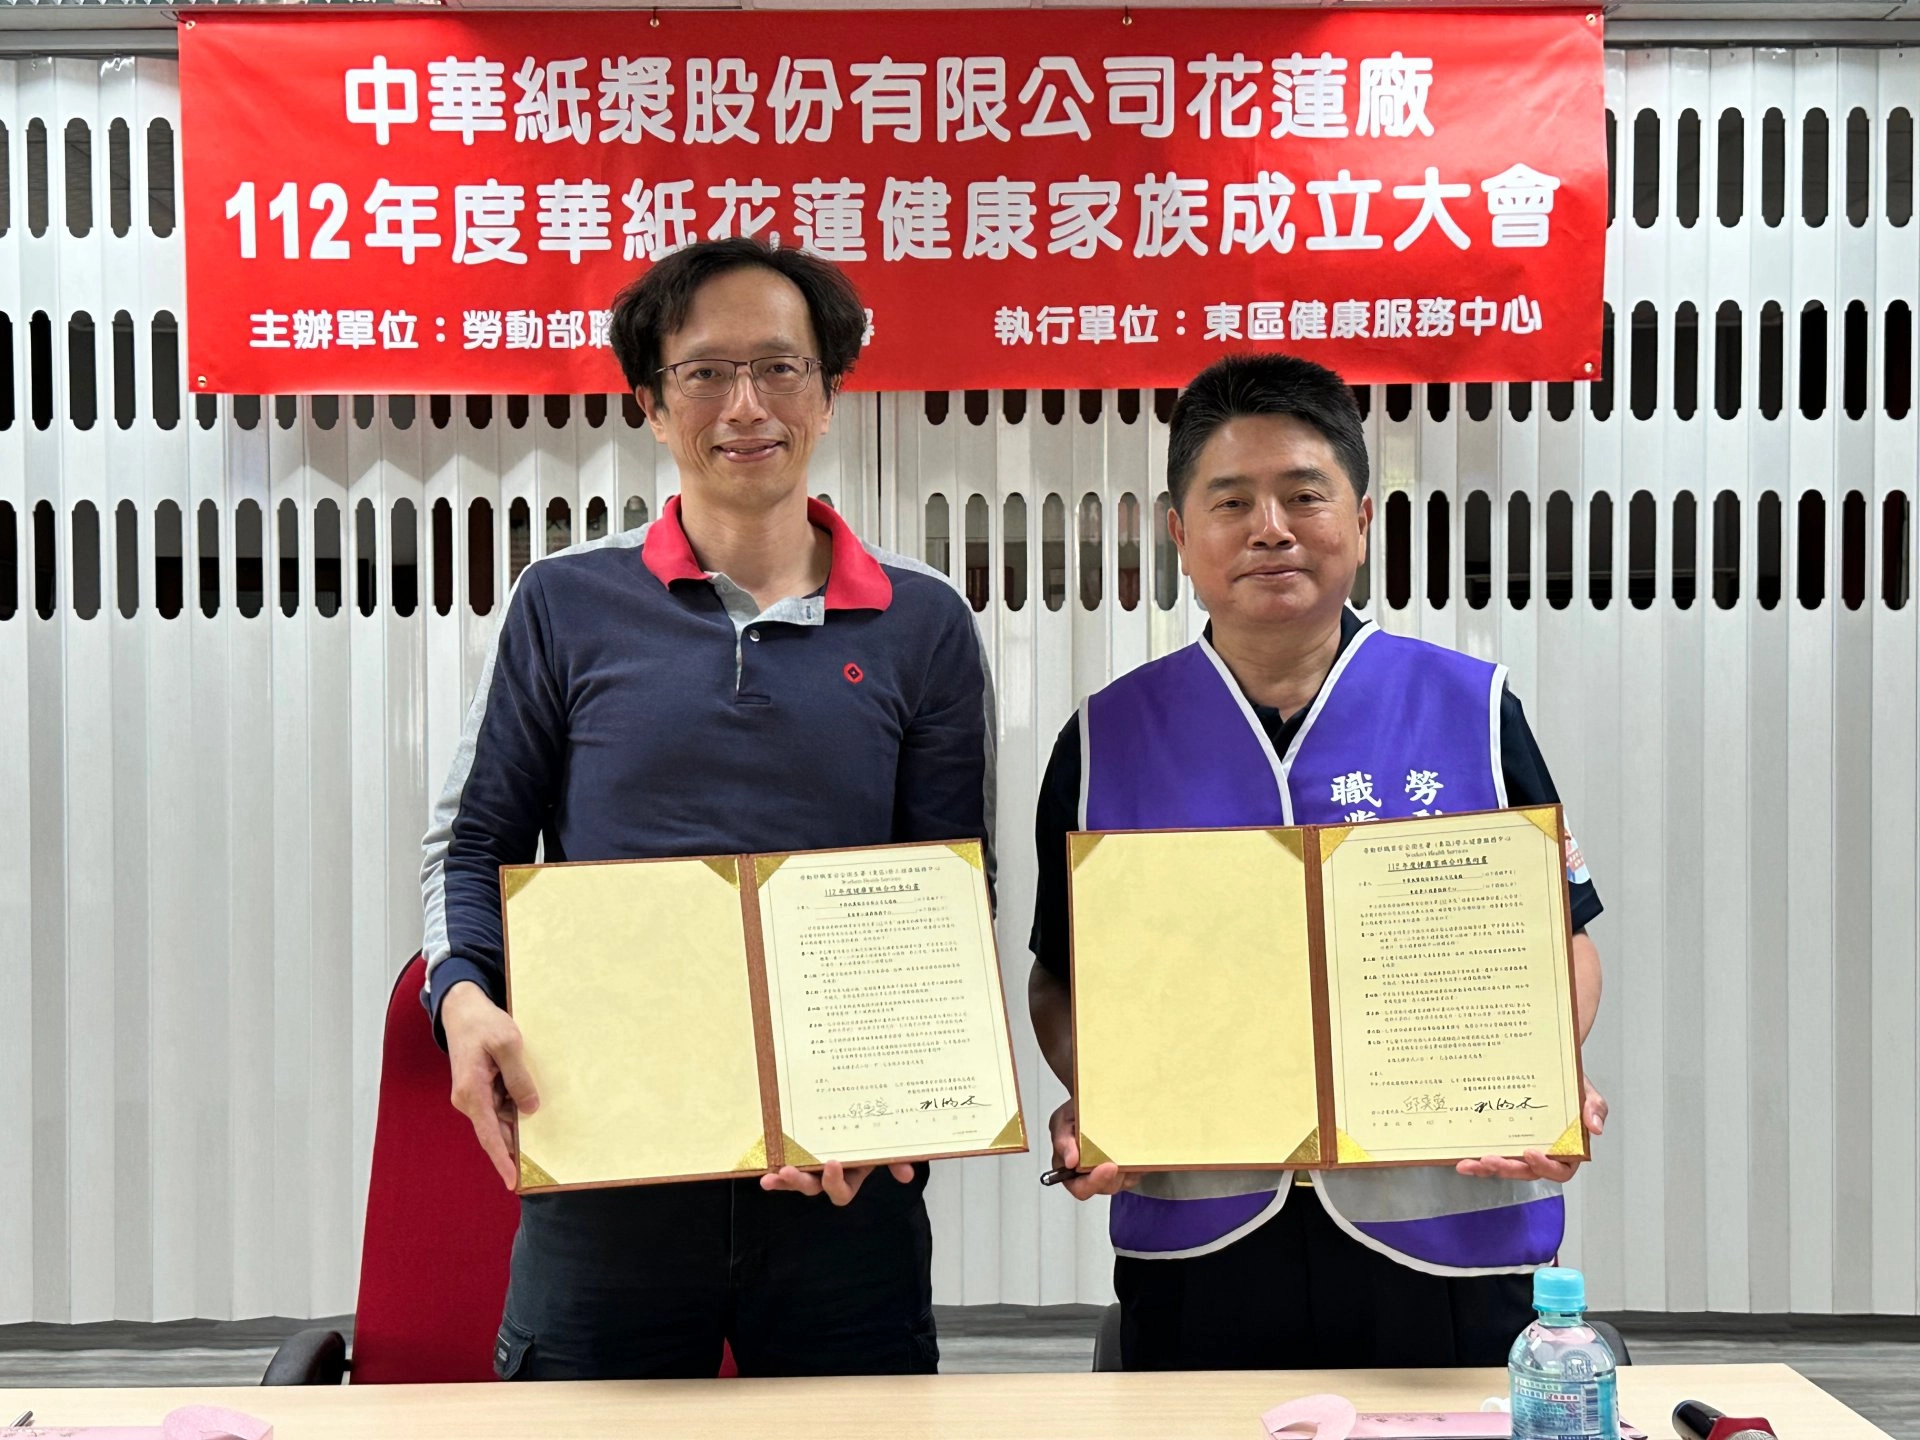 (左)廠長邱奕盛與(右)主持人劉鴻文共同簽屬健康家族成立意向書